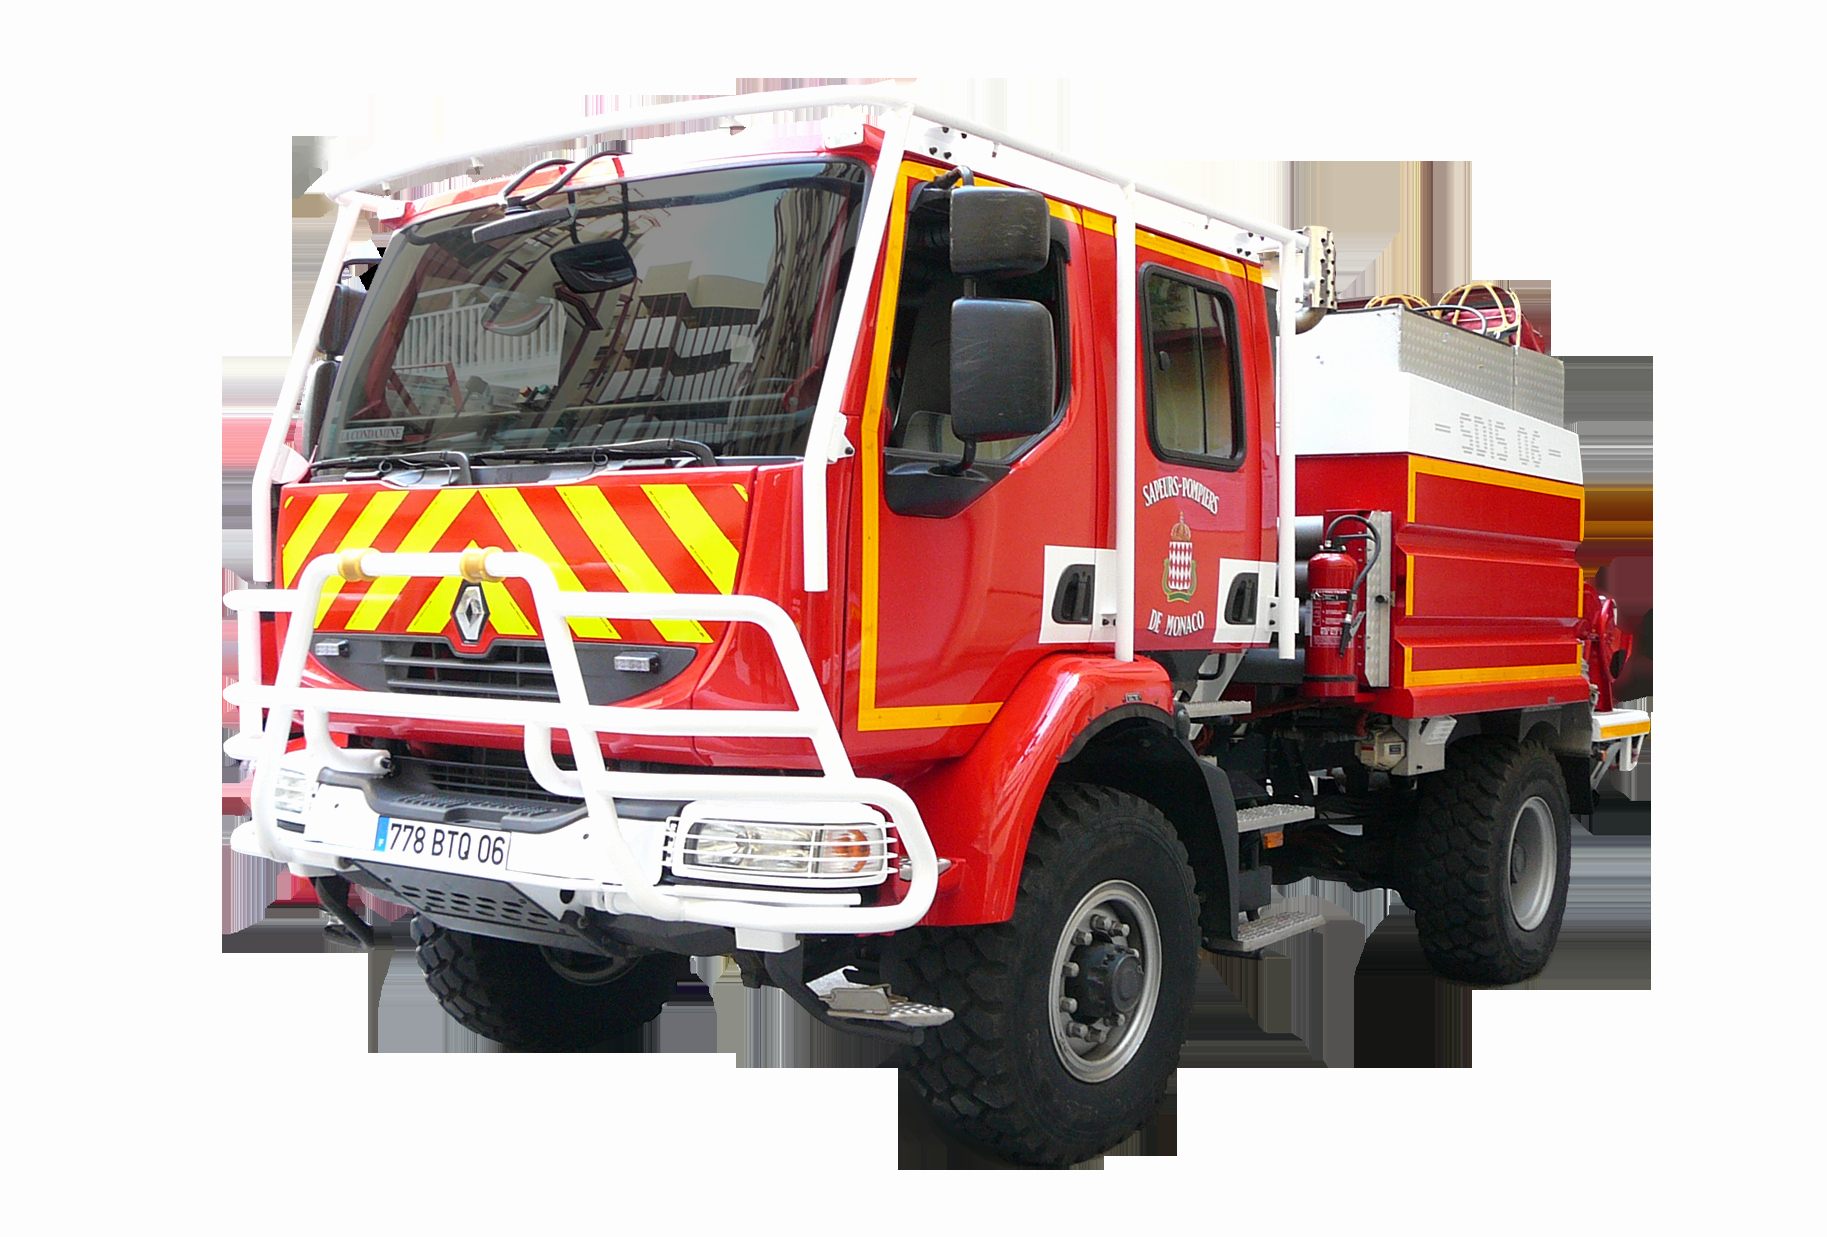 Lit Pompier Enfant Frais Camion Pompier Occasion Luxe Voiture Pompier Simple Windsor Nouvelle